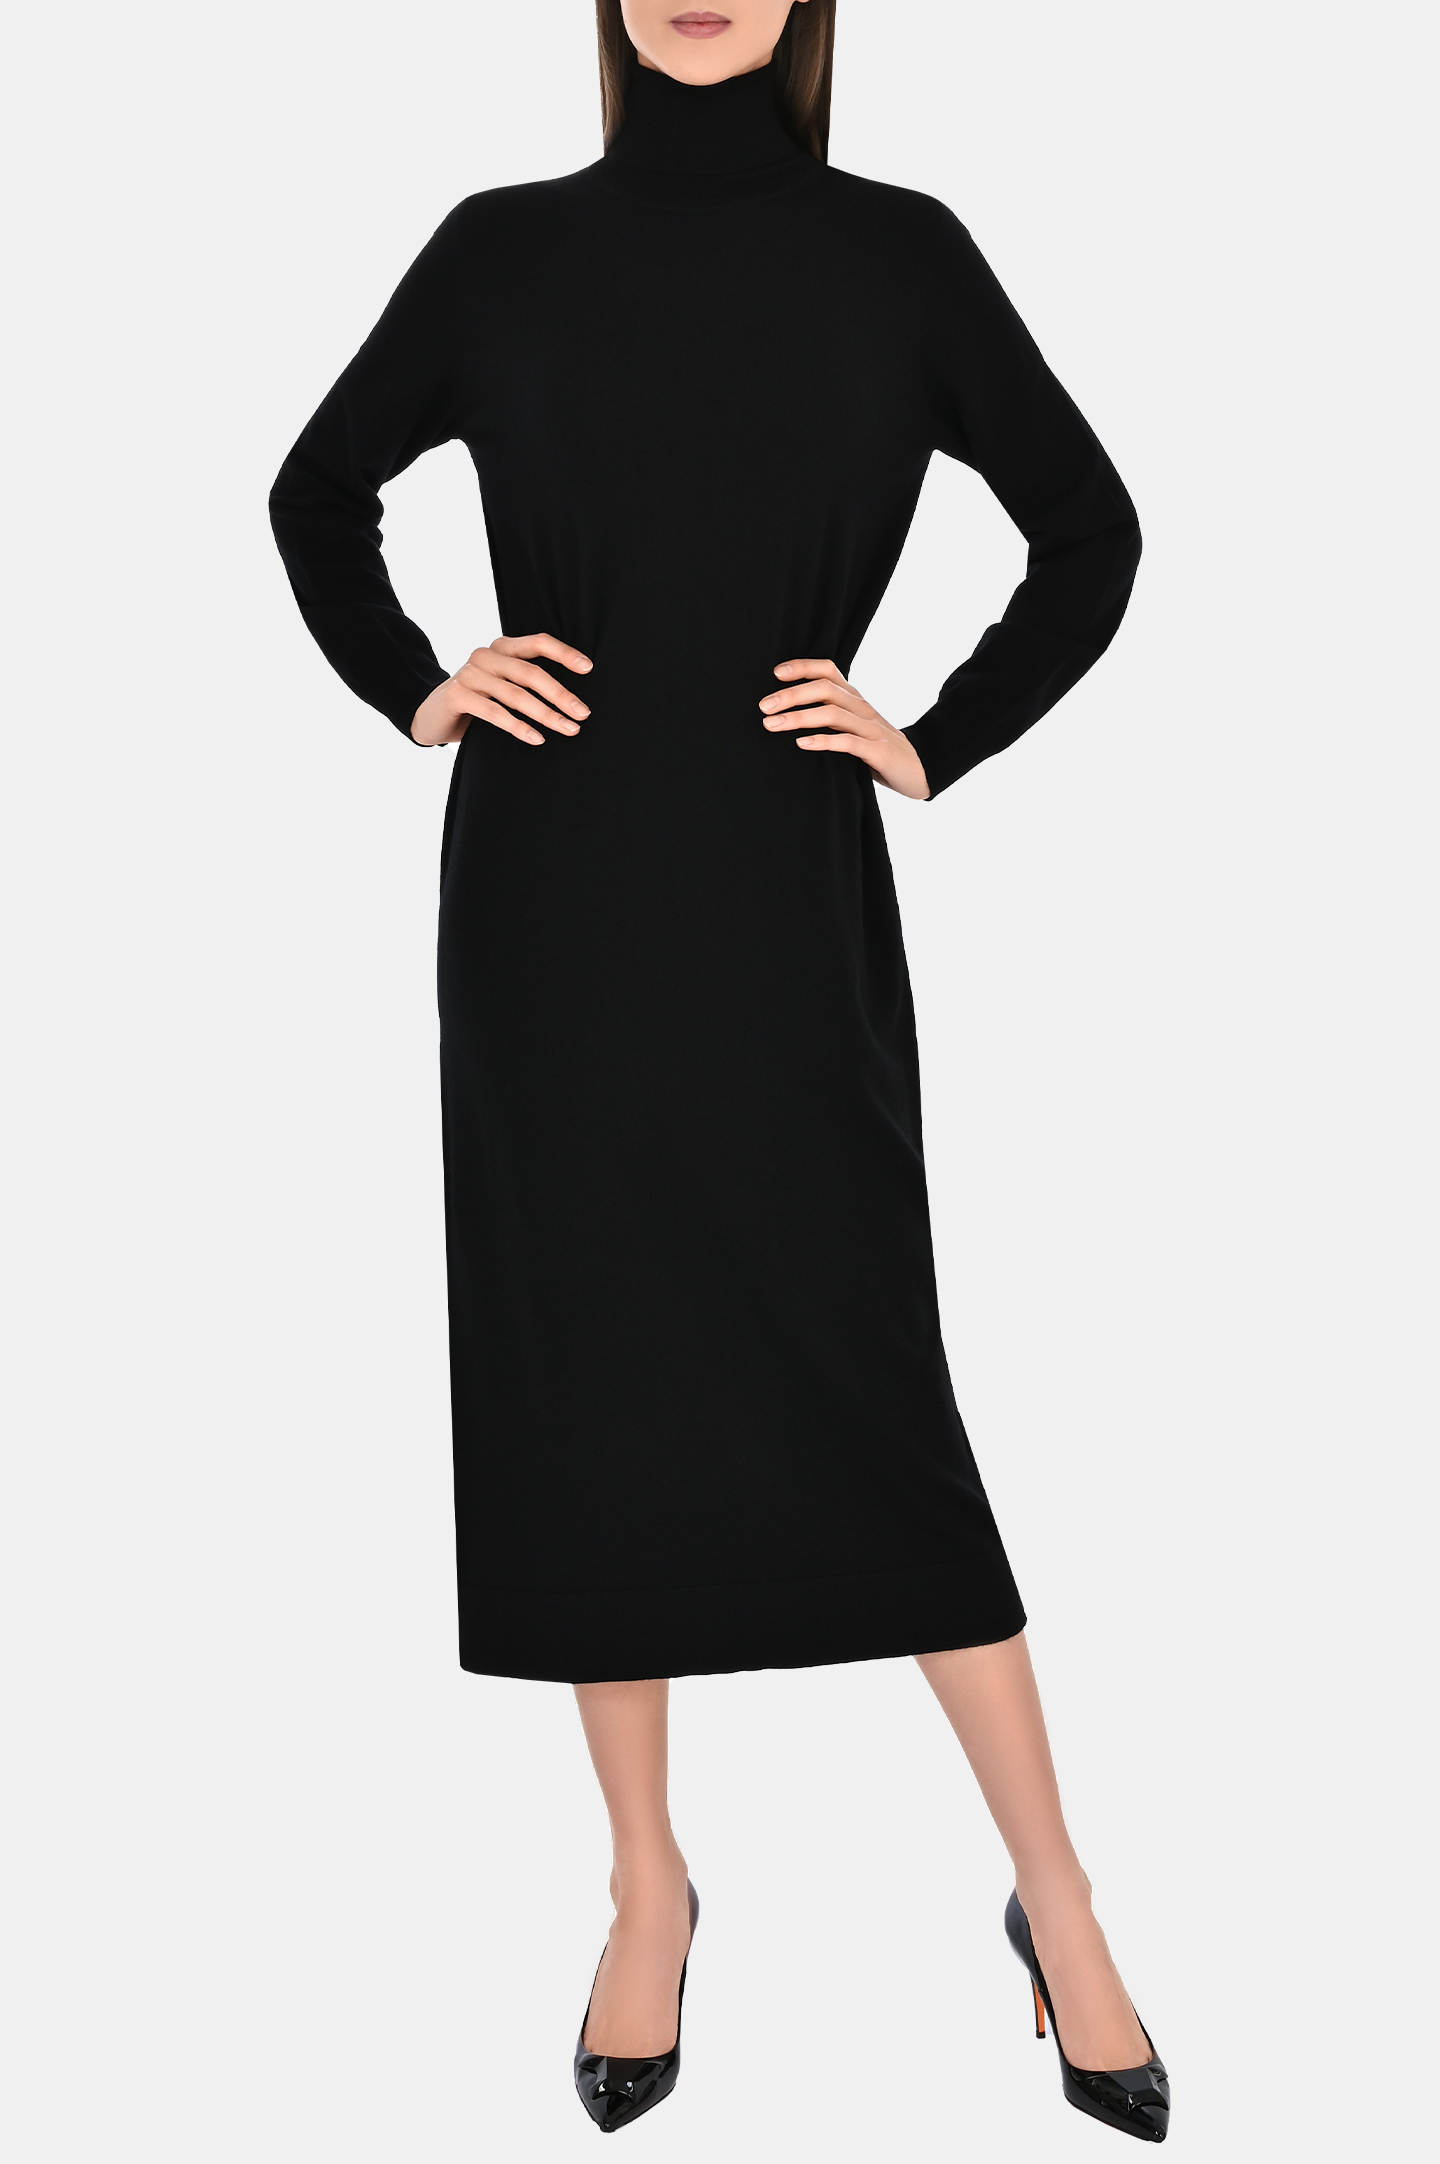 Платье P.A.R.O.S.H. D550821-LIME, цвет: Черный, Женский